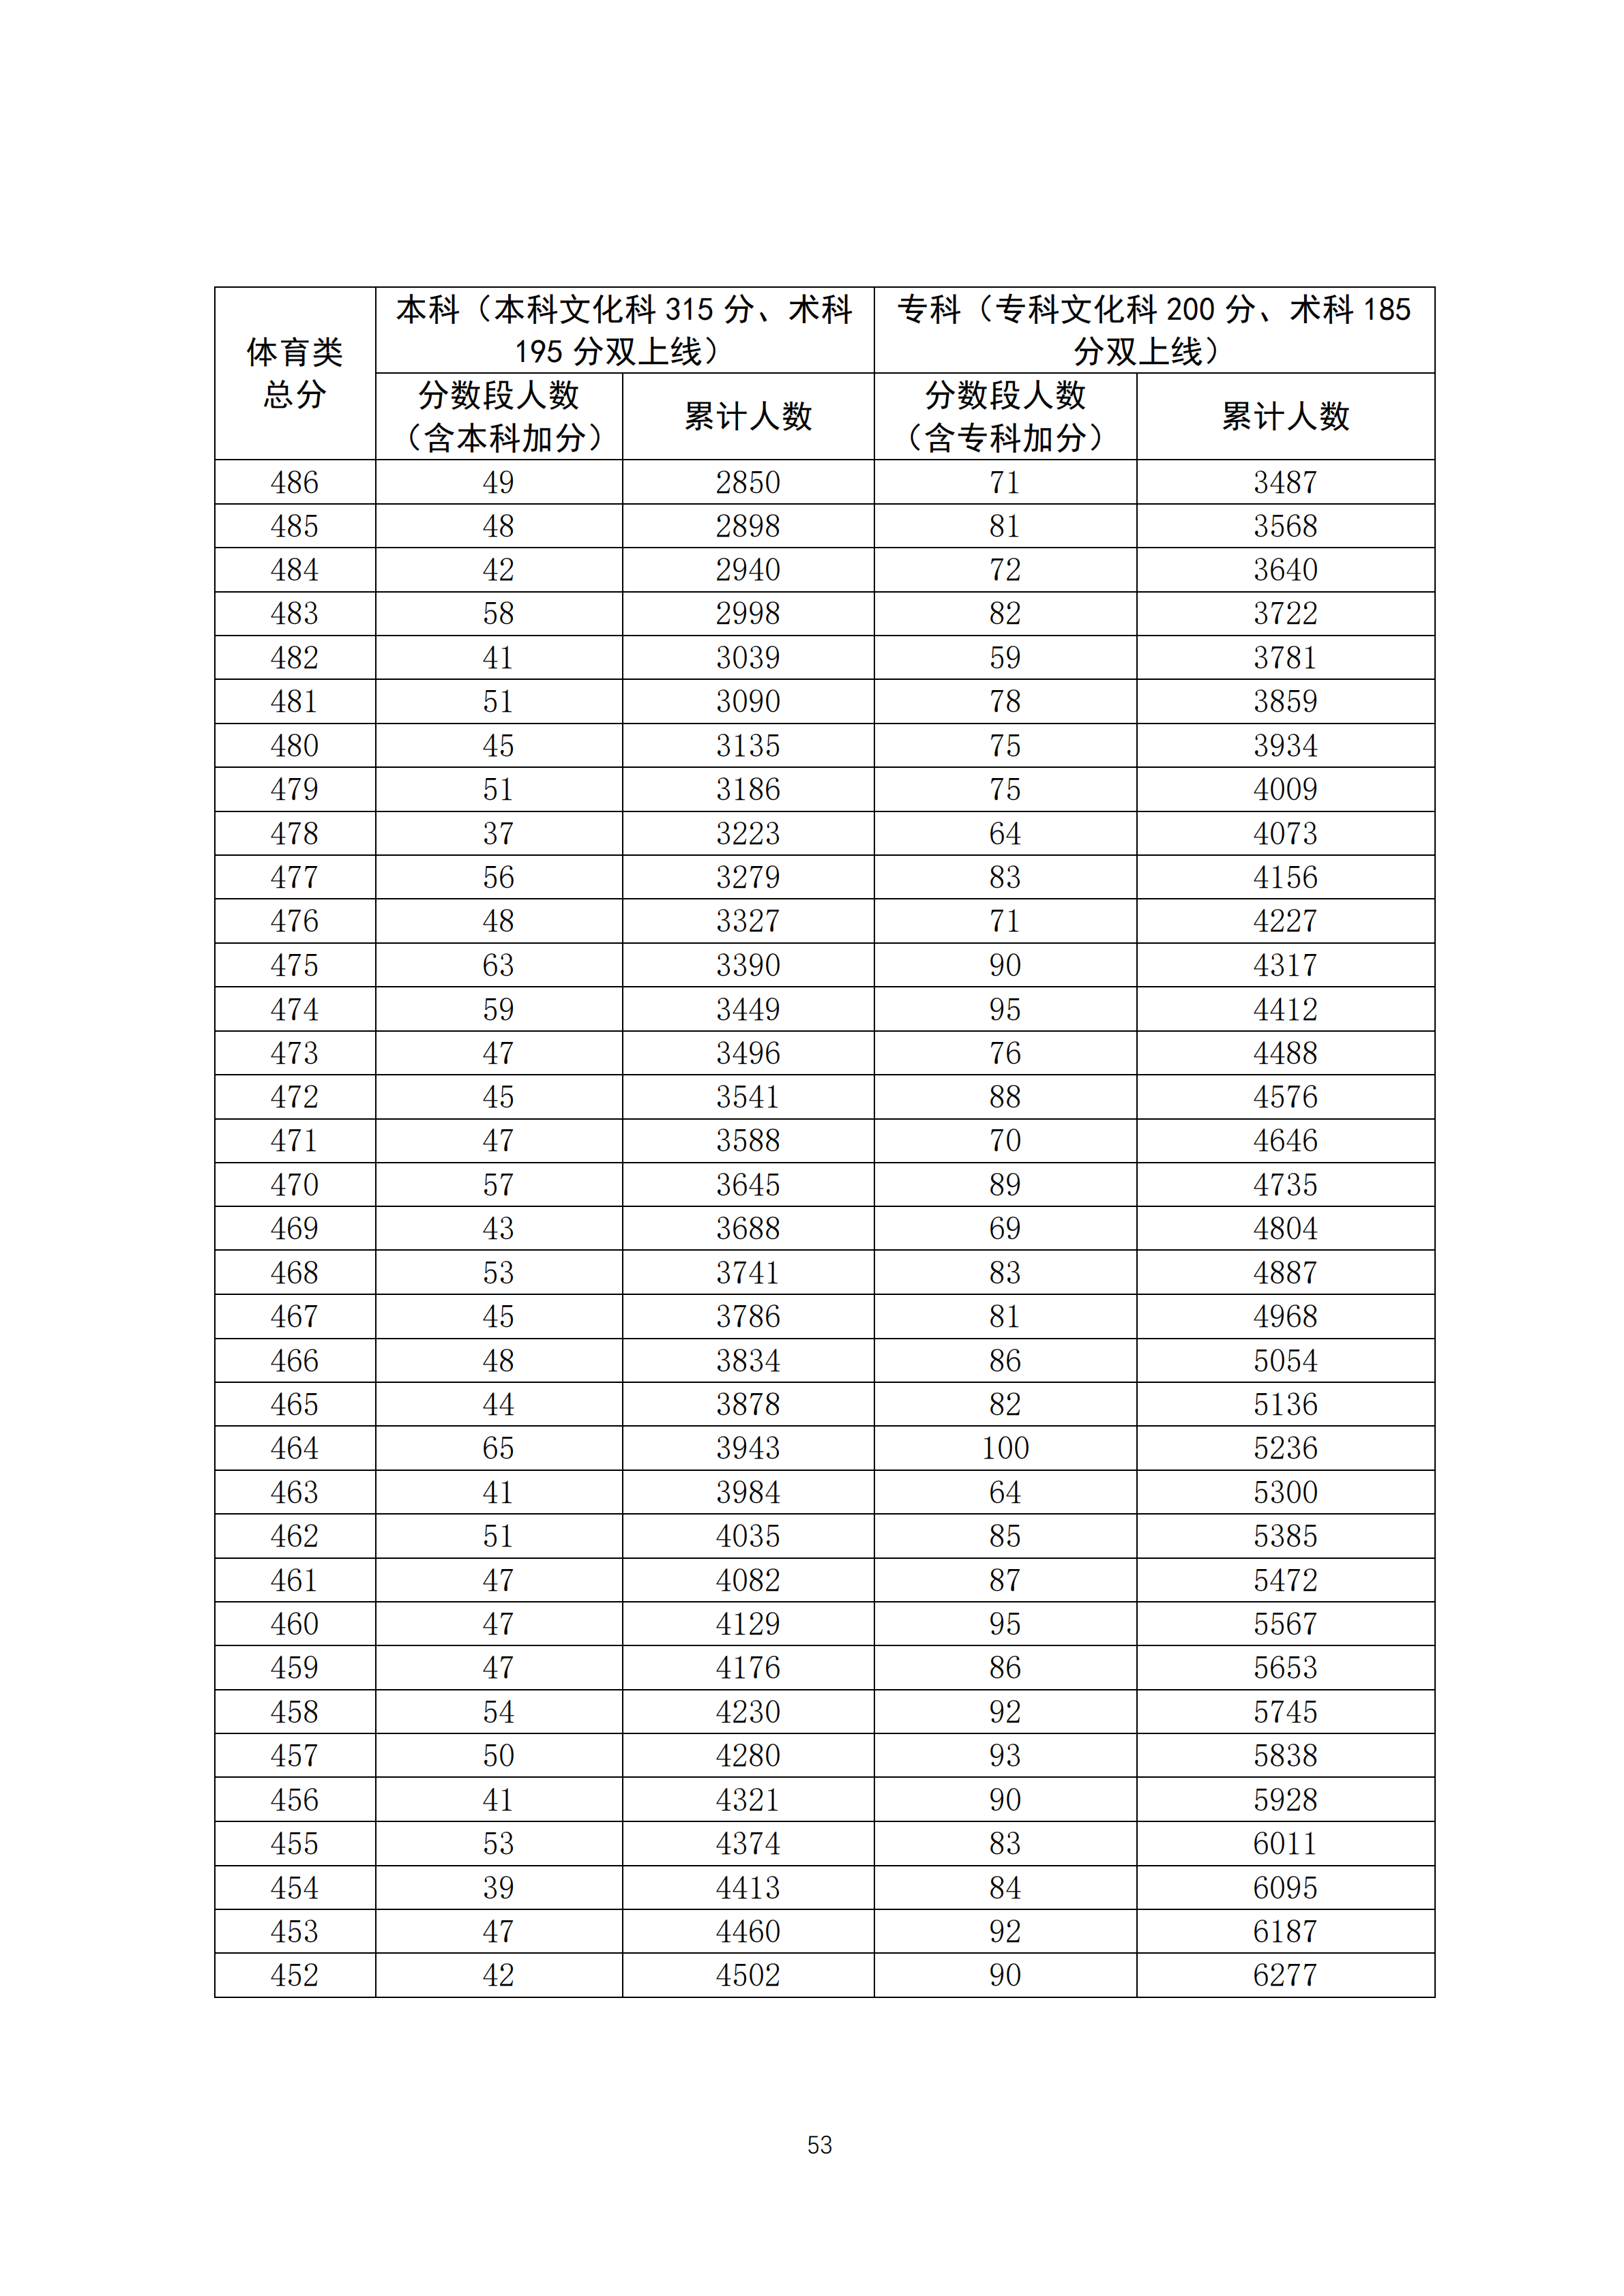 2020广东高考一分一段表 体育类成绩排名及累计考生人数